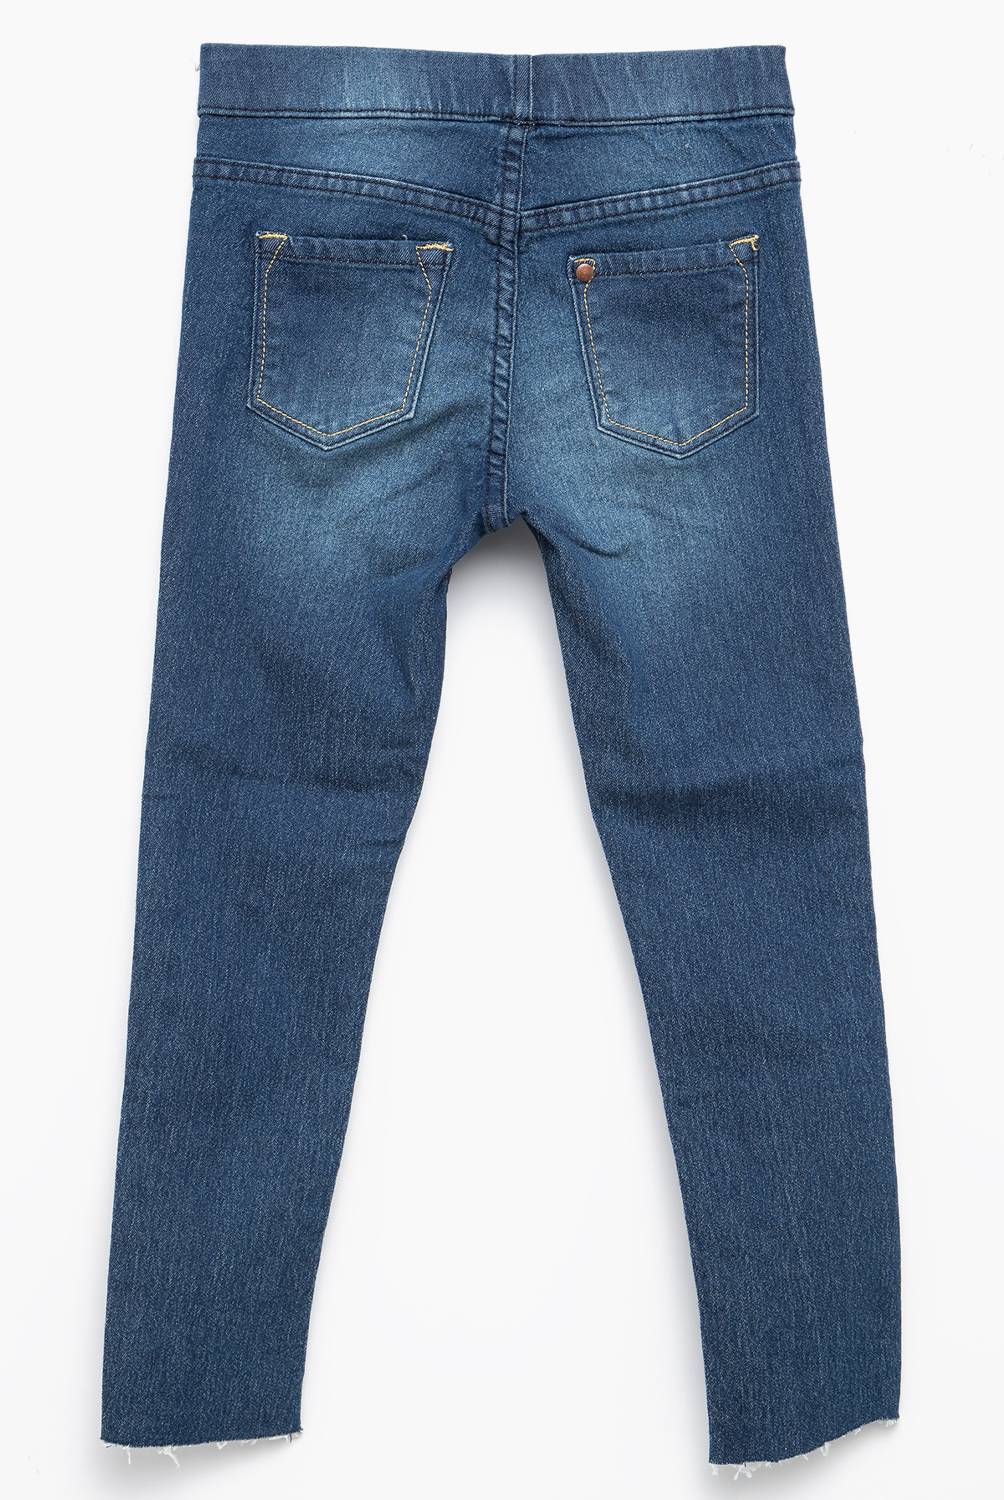 YAMP - Jeans Moda 